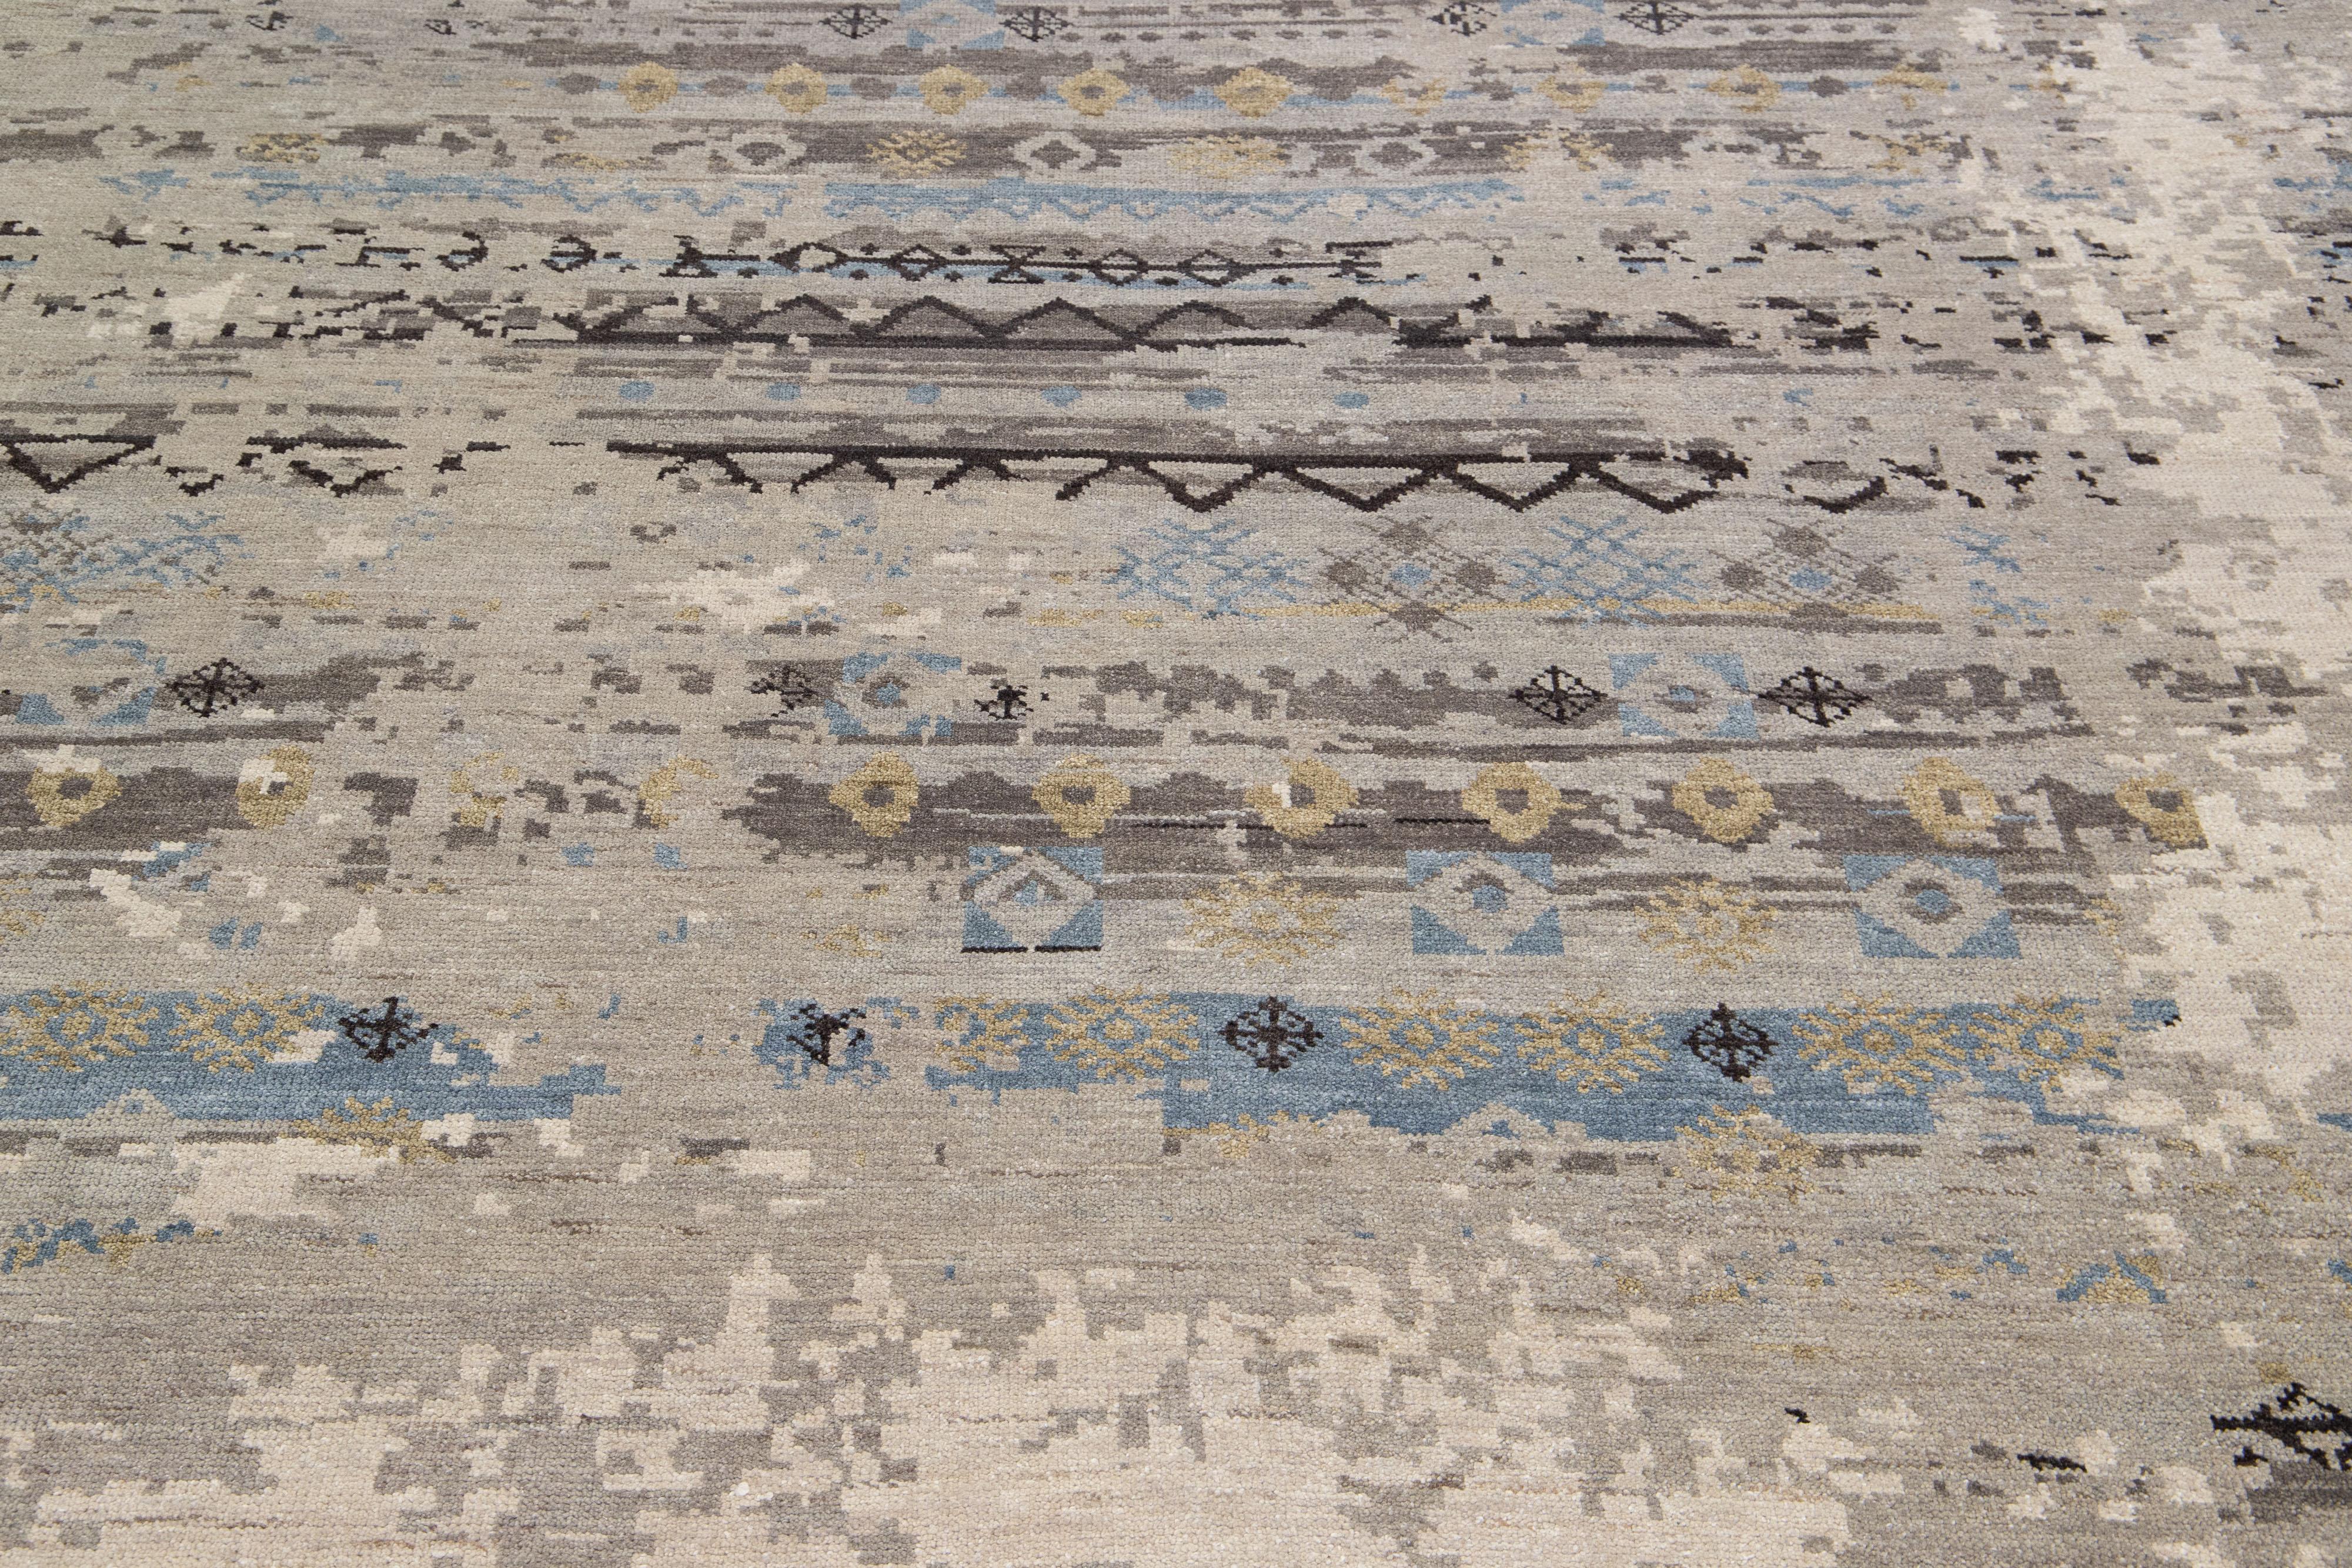 Dieser Teppich aus Wolle und Seide besticht durch sein modernes Design mit einem fesselnden Tribal-Motiv in einem eleganten Grauton. Die exquisiten blauen und hellbraunen Akzente ergänzen das ausgeprägte abstrakte Muster perfekt und verleihen ihm